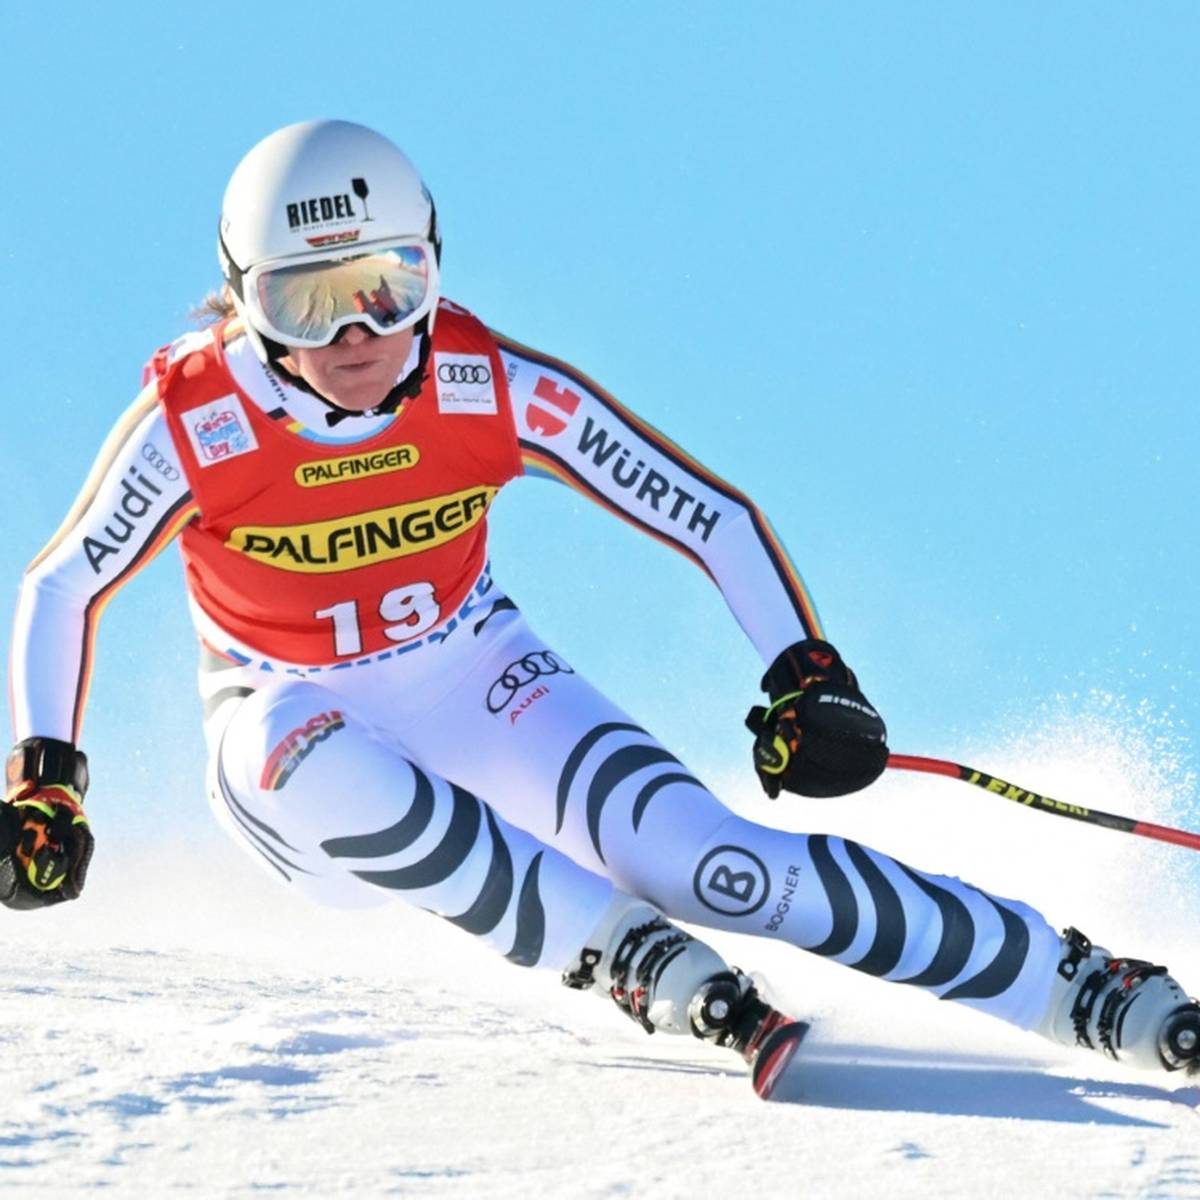 Skirennläuferin Kira Weidle hat offensichtlich beste Voraussetzungen für eine erfolgreiche Generalprobe für die Olympischen Spiele.